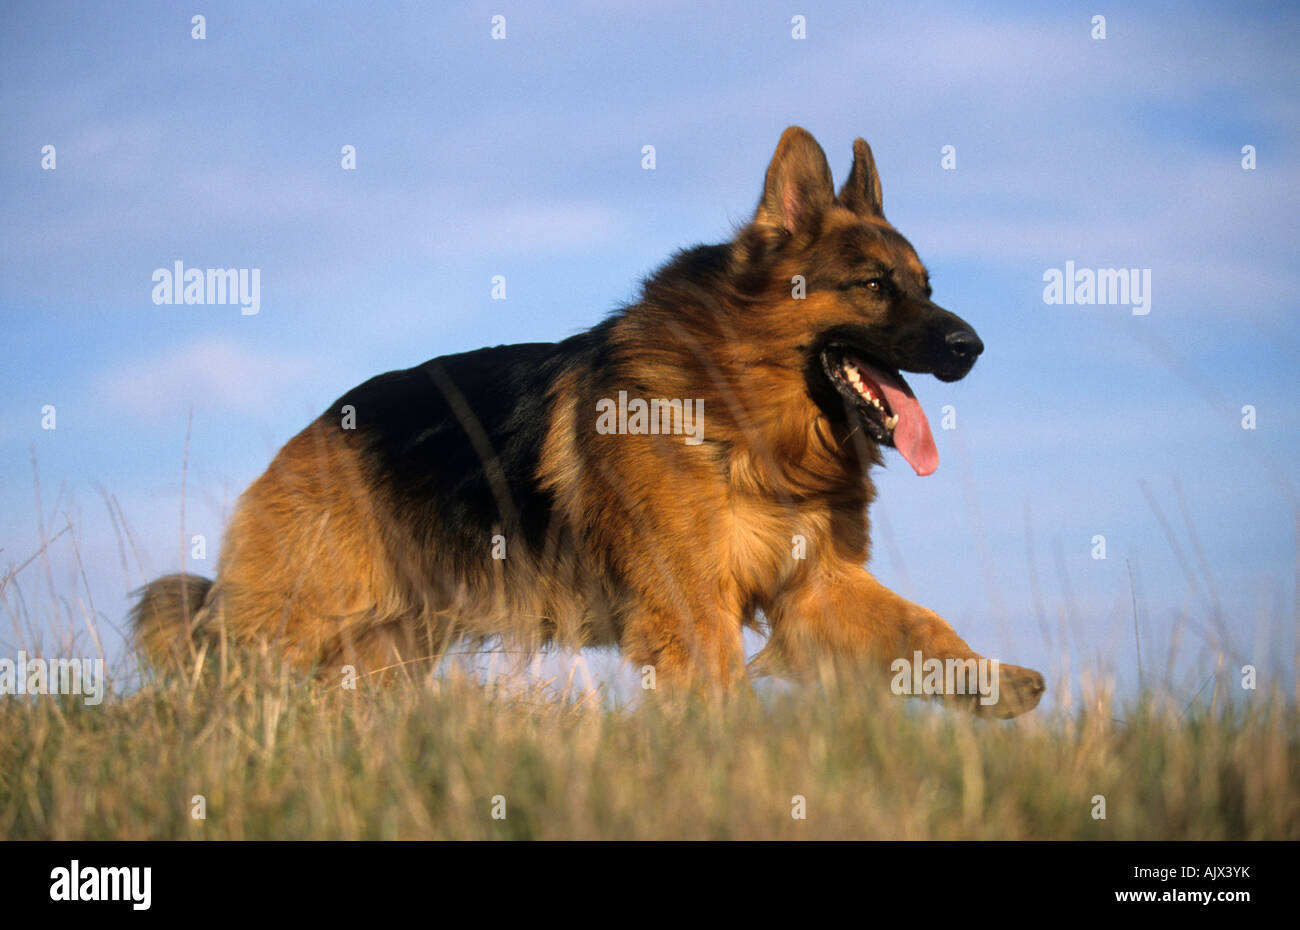 Altdeutscher Schäferhund in Wiese rennend | German shepherd dog running Stock Photo